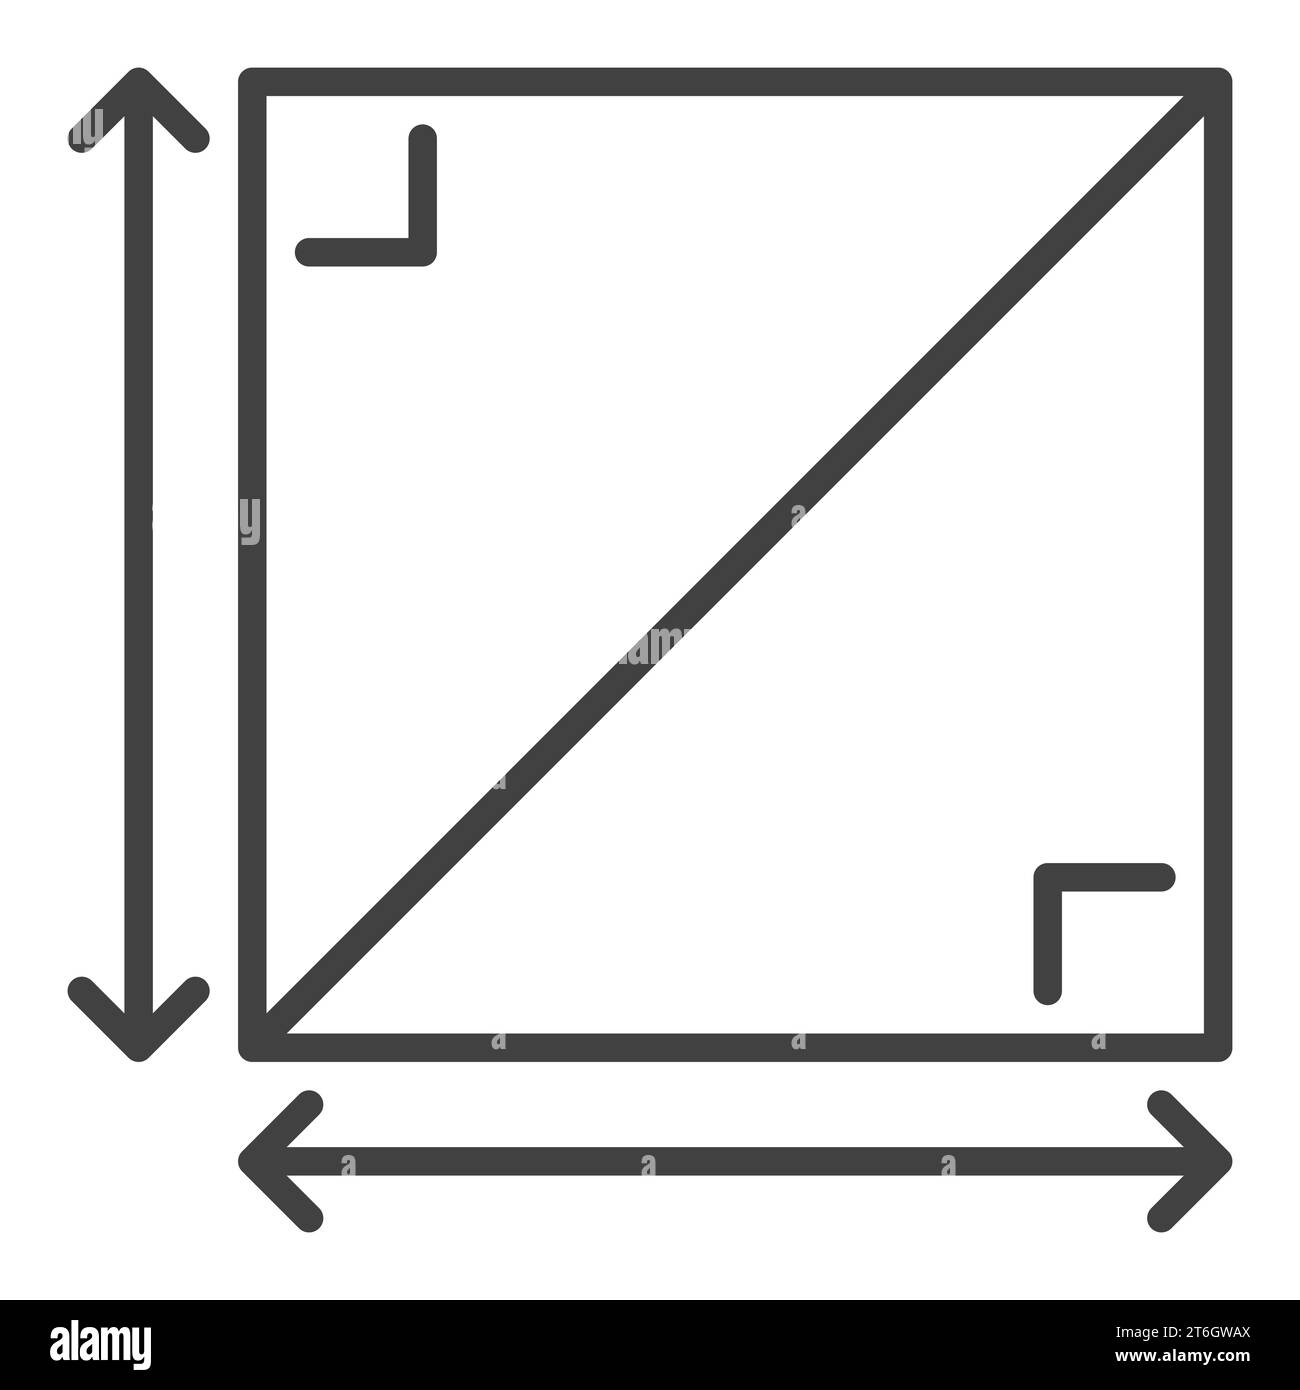 Icona o simbolo lineare del concetto di matematica vettoriale di forma quadrata 2D Illustrazione Vettoriale